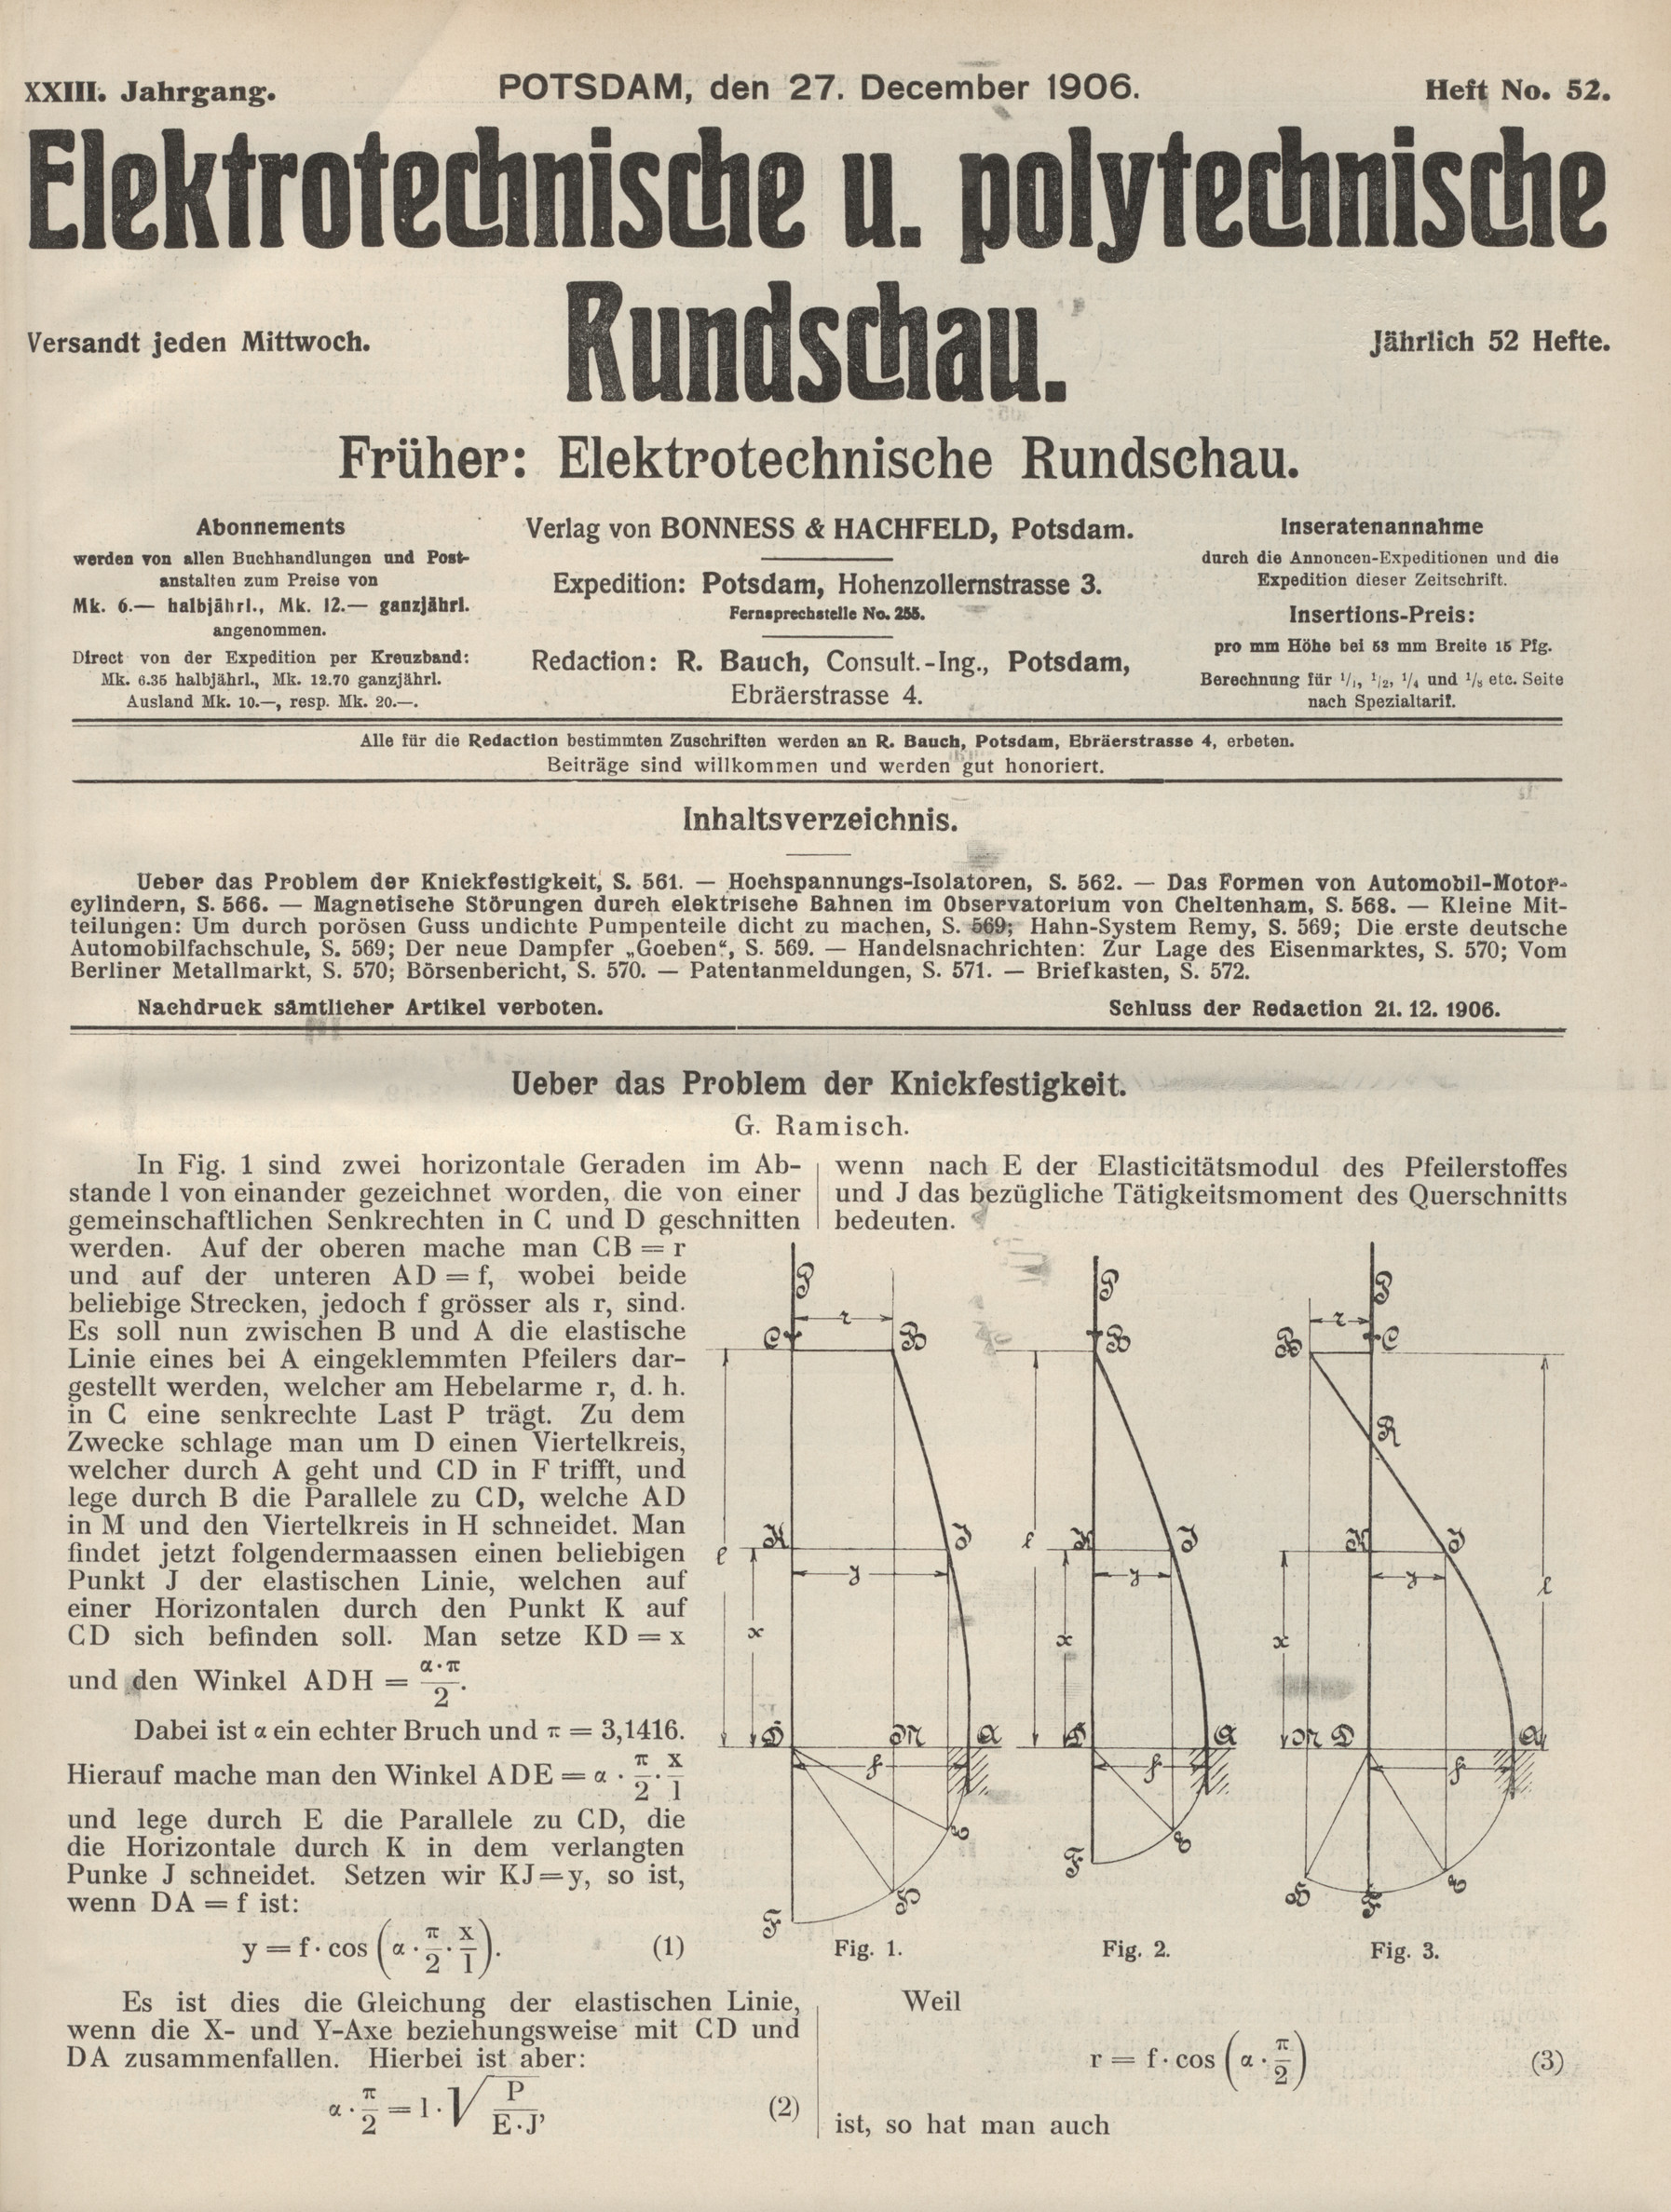 Elektrotechnische und polytechnische Rundschau, XXIII. Jahrgang, Heft No. 52